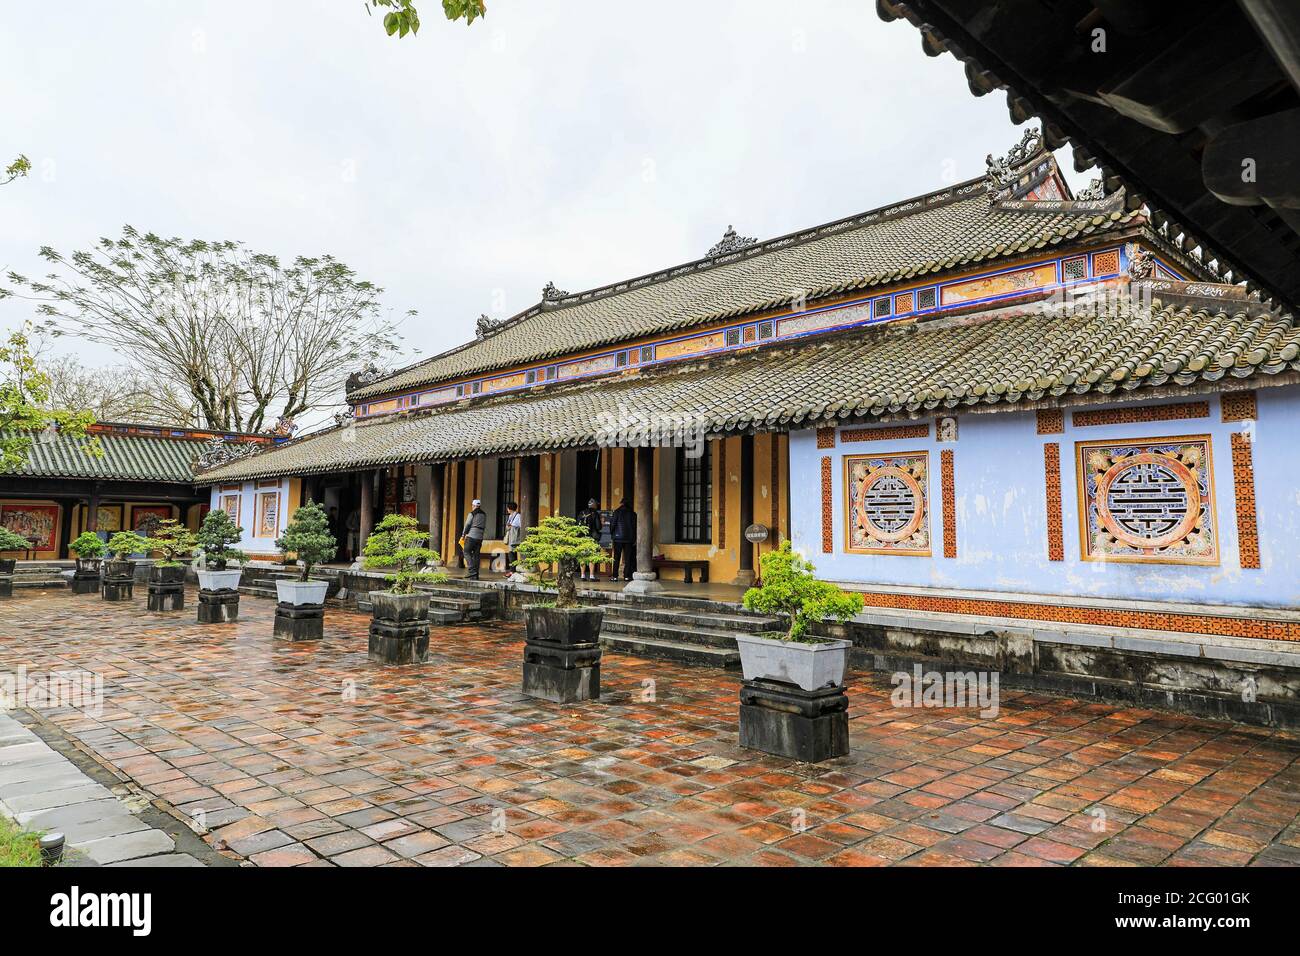 Bonsai alberi in pentole nella città imperiale, un recinto murato all'interno della cittadella della città di Huế, Vietnam, Sud-Est asiatico, Asia Foto Stock